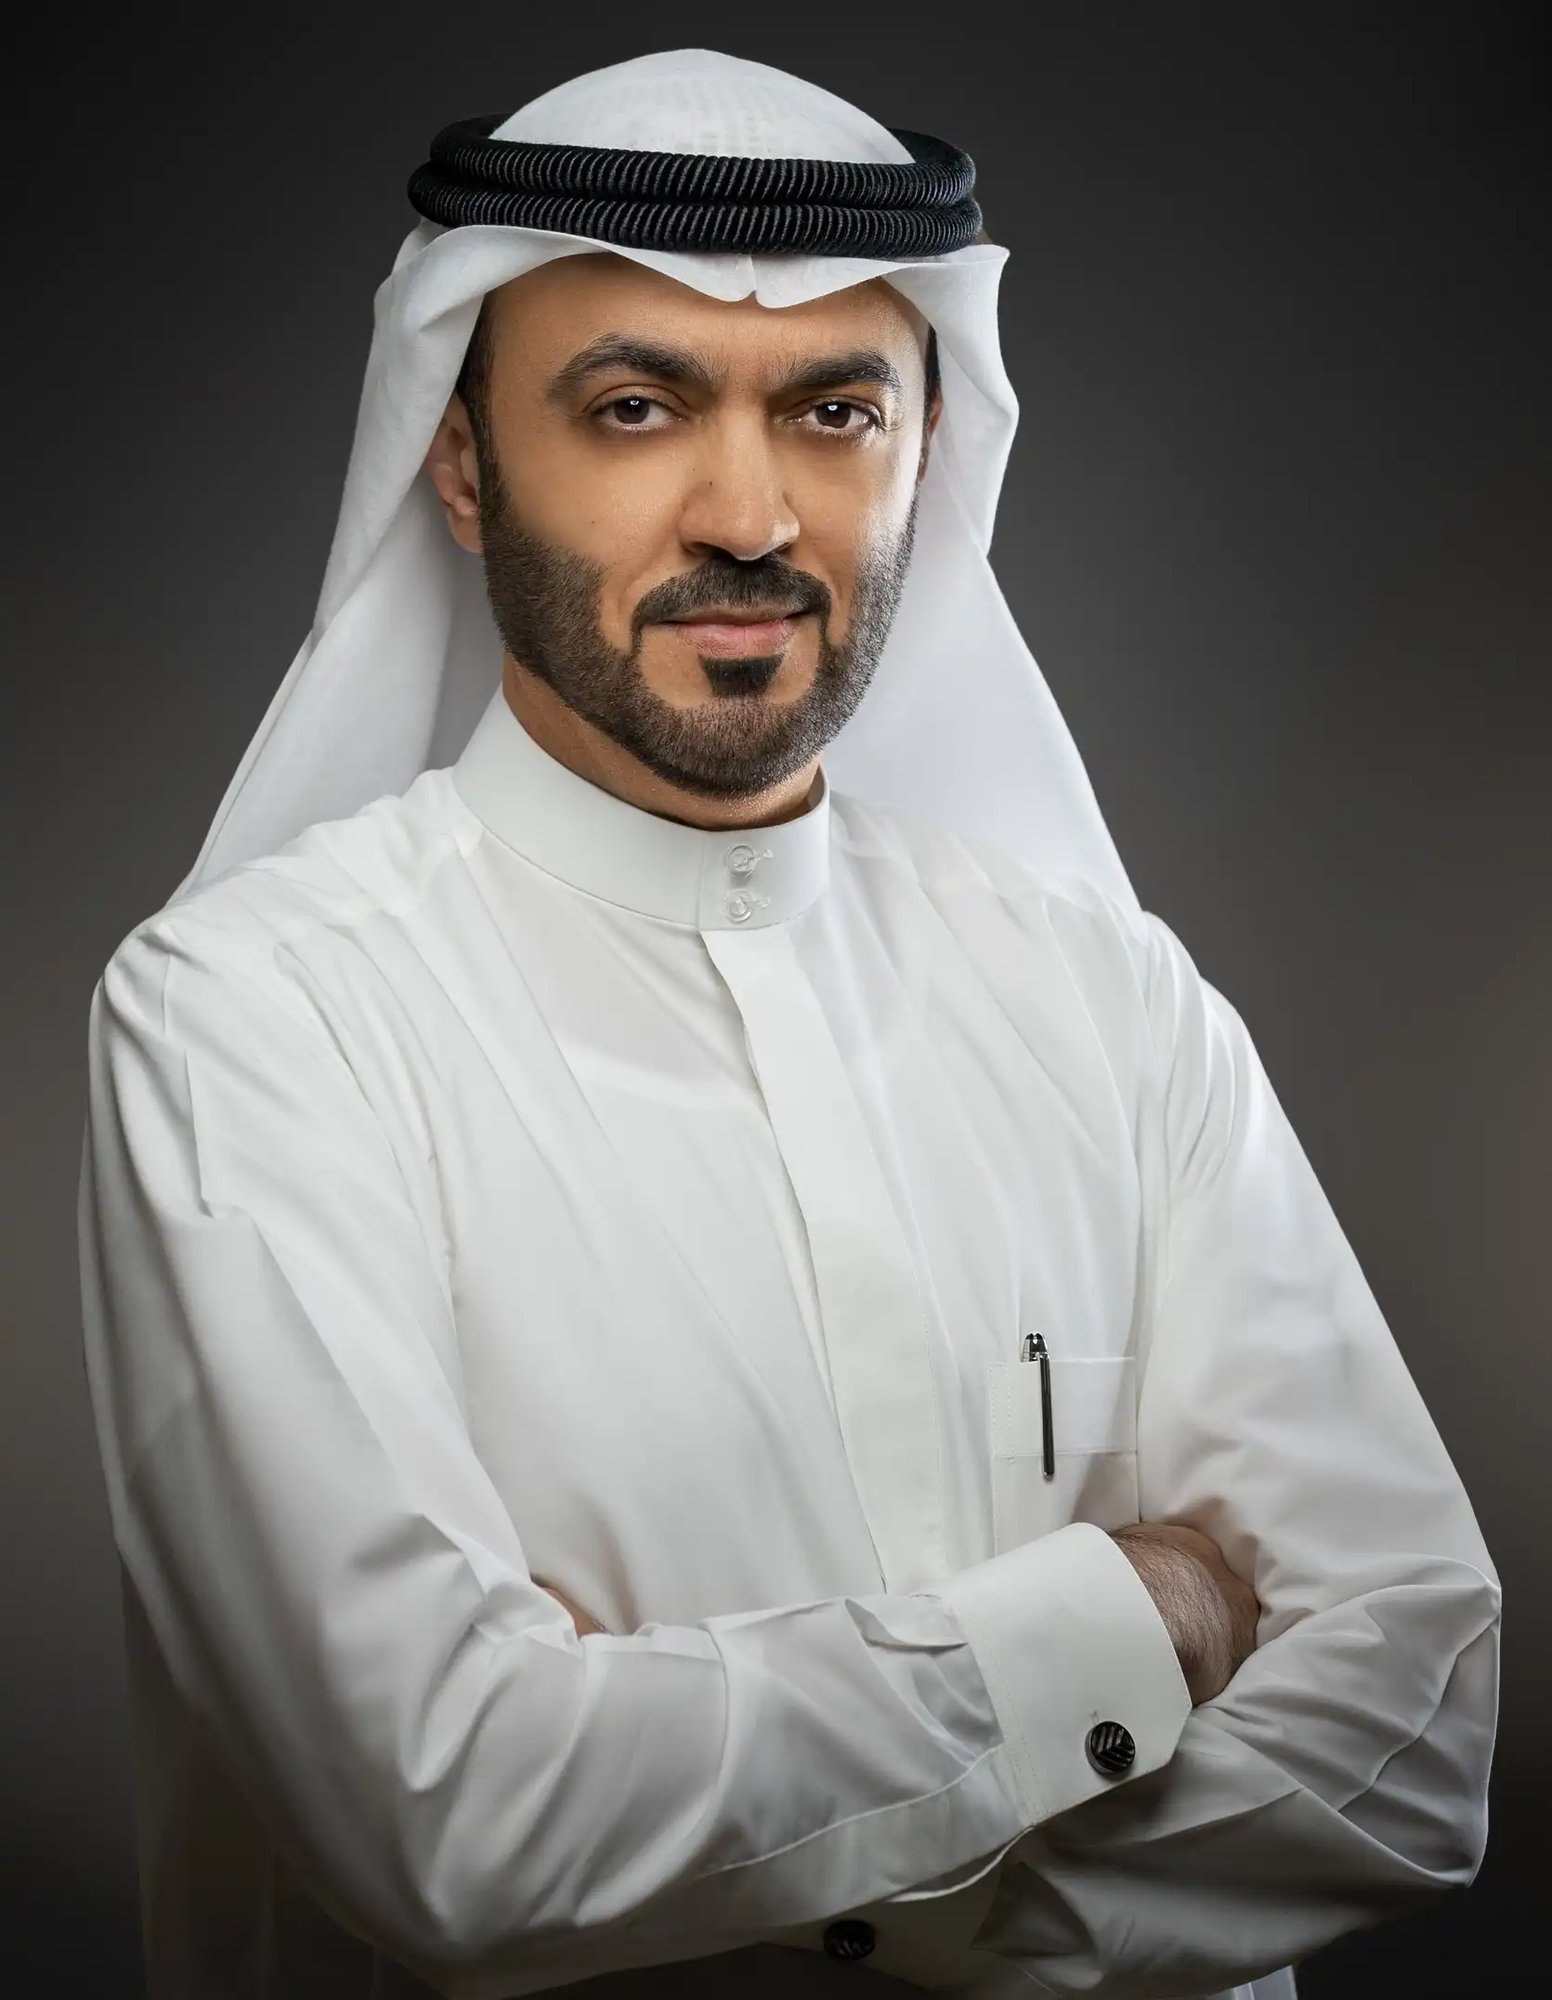 H.E. Dr Khalid Omar Al Midfa